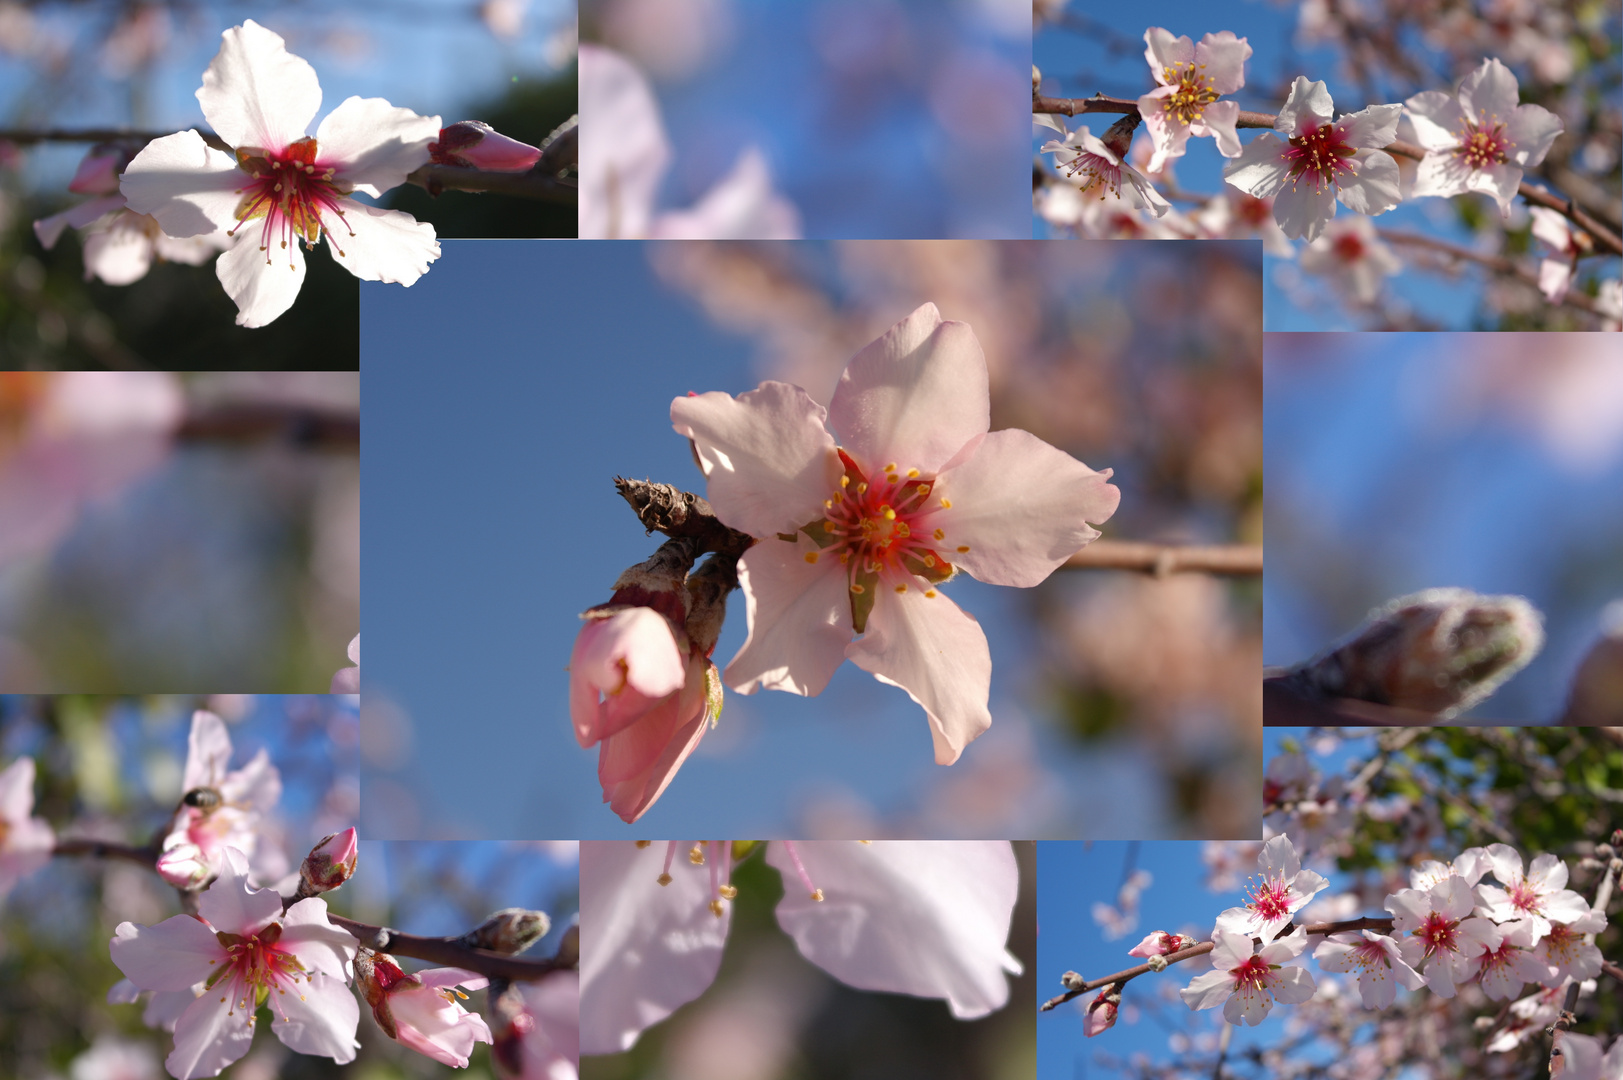 Mandelblüten als Collage